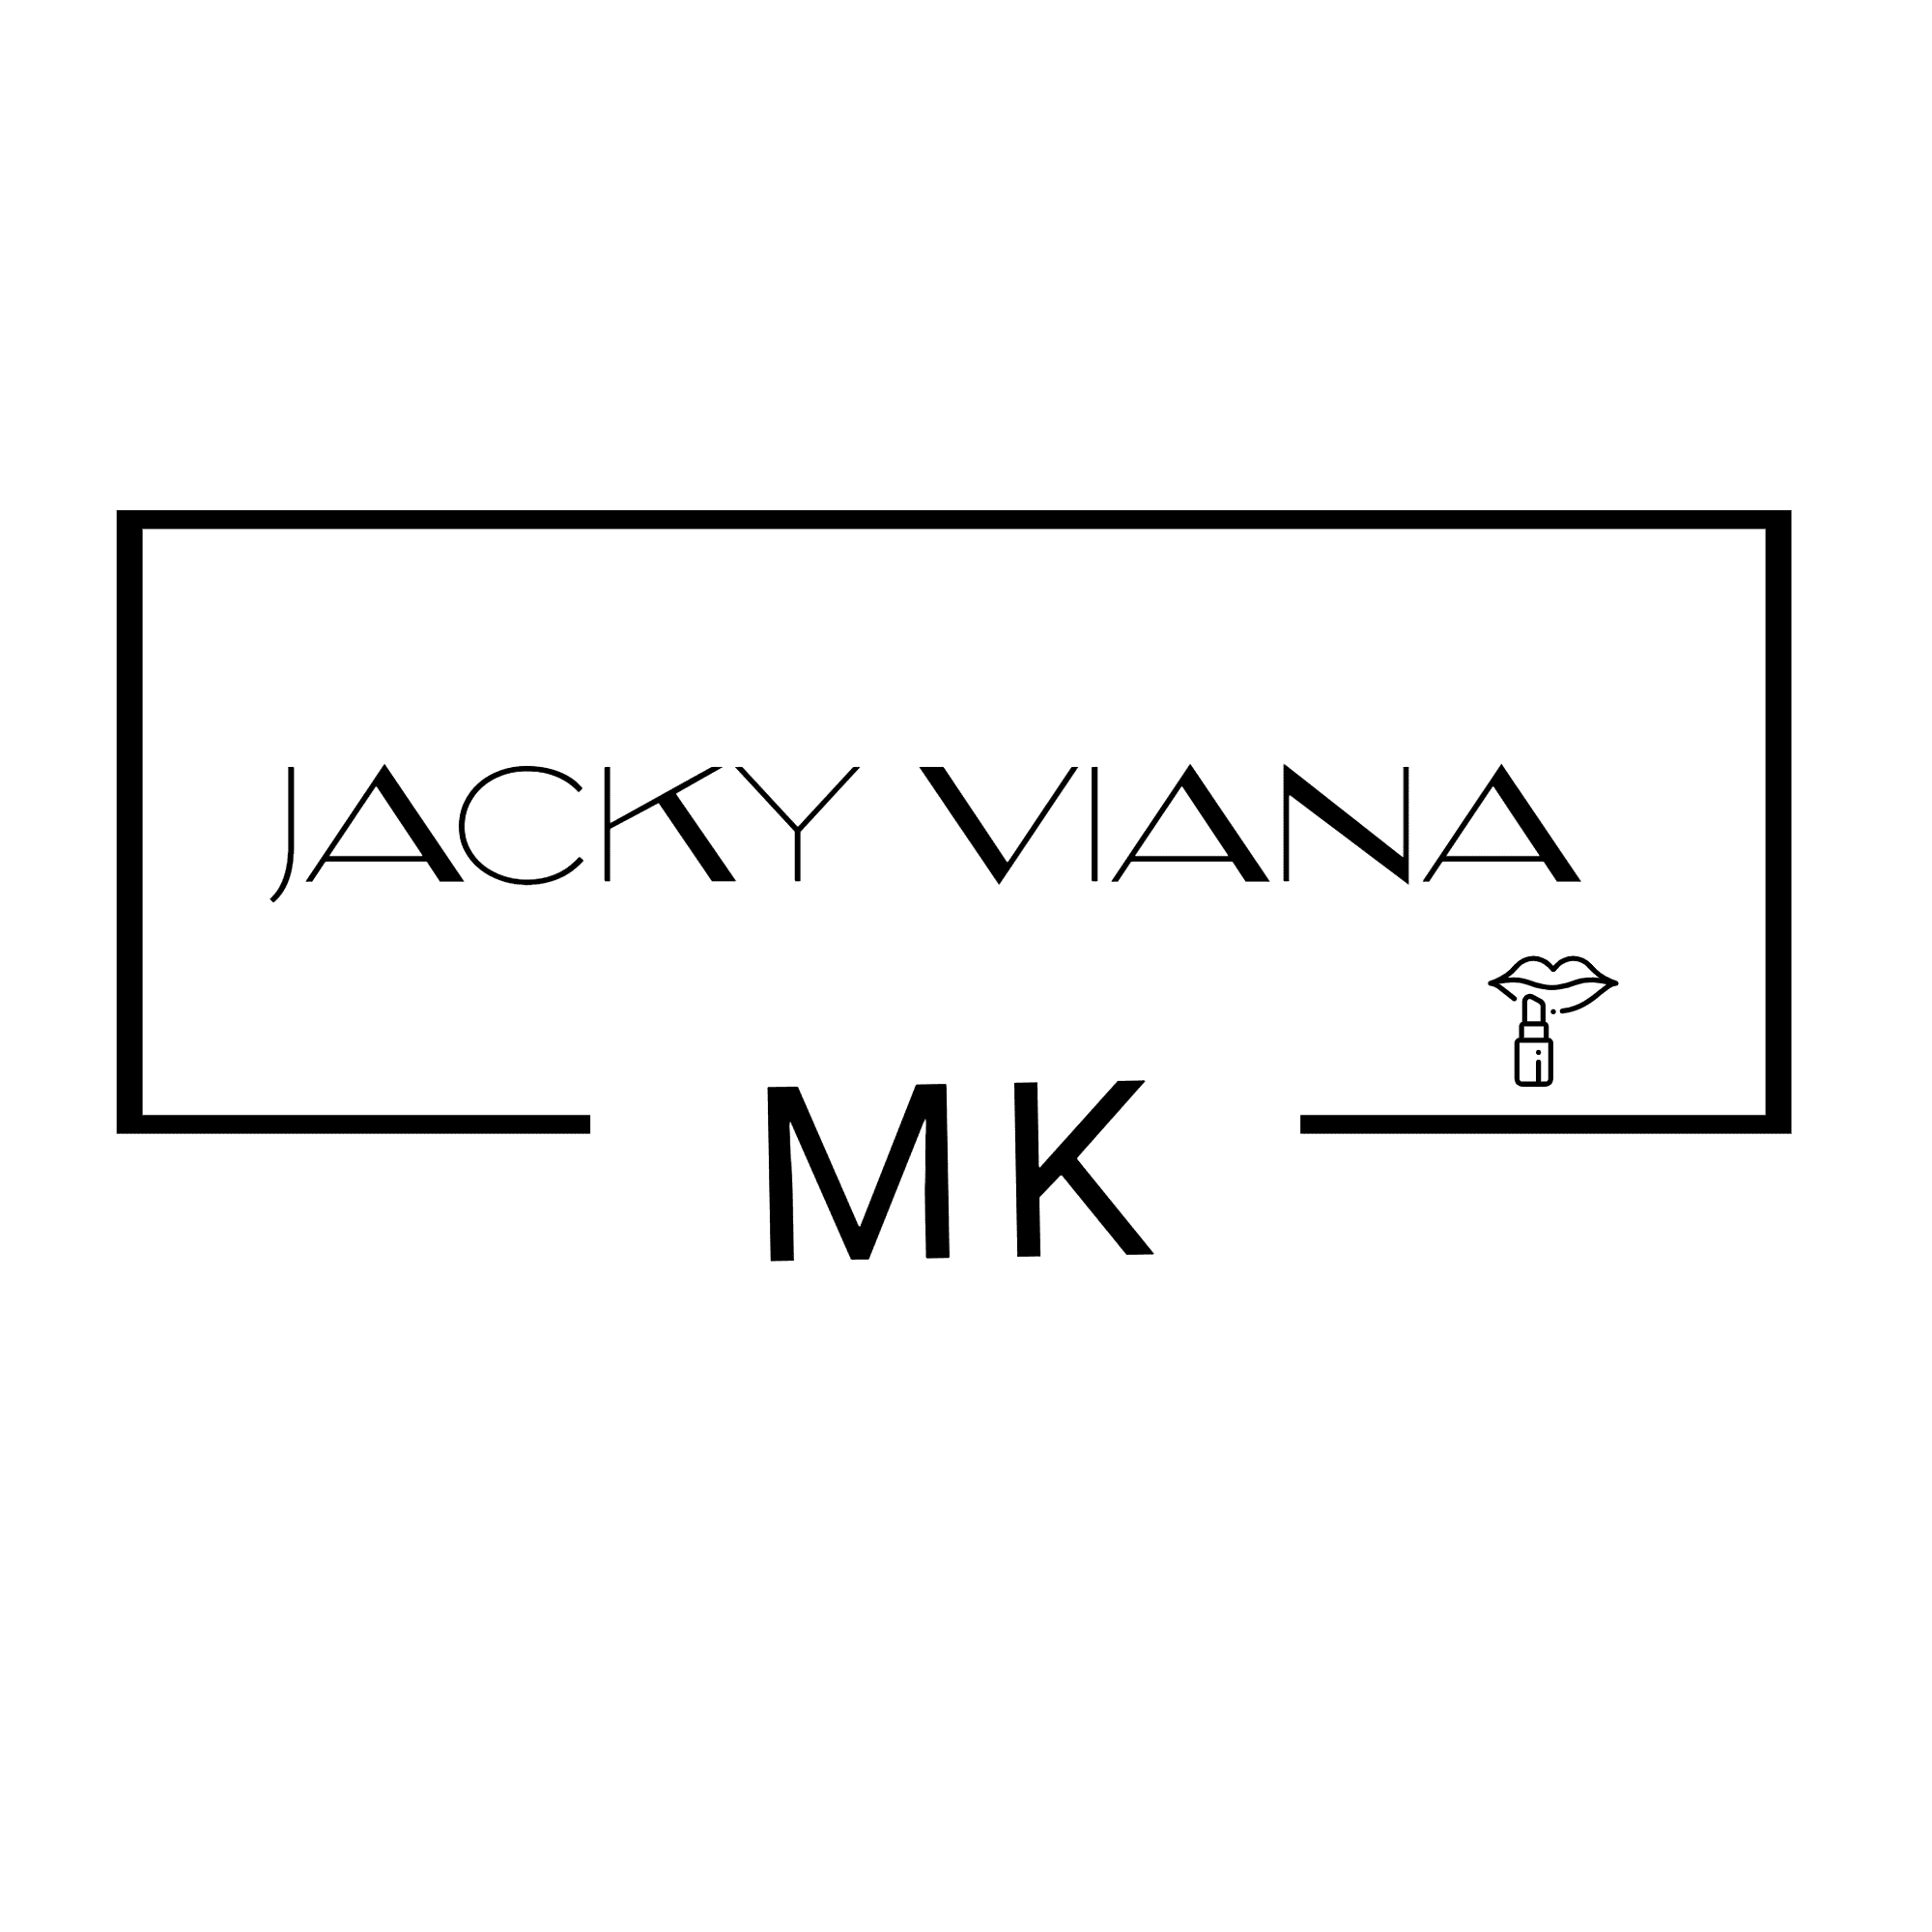 Jacky Viana Mk